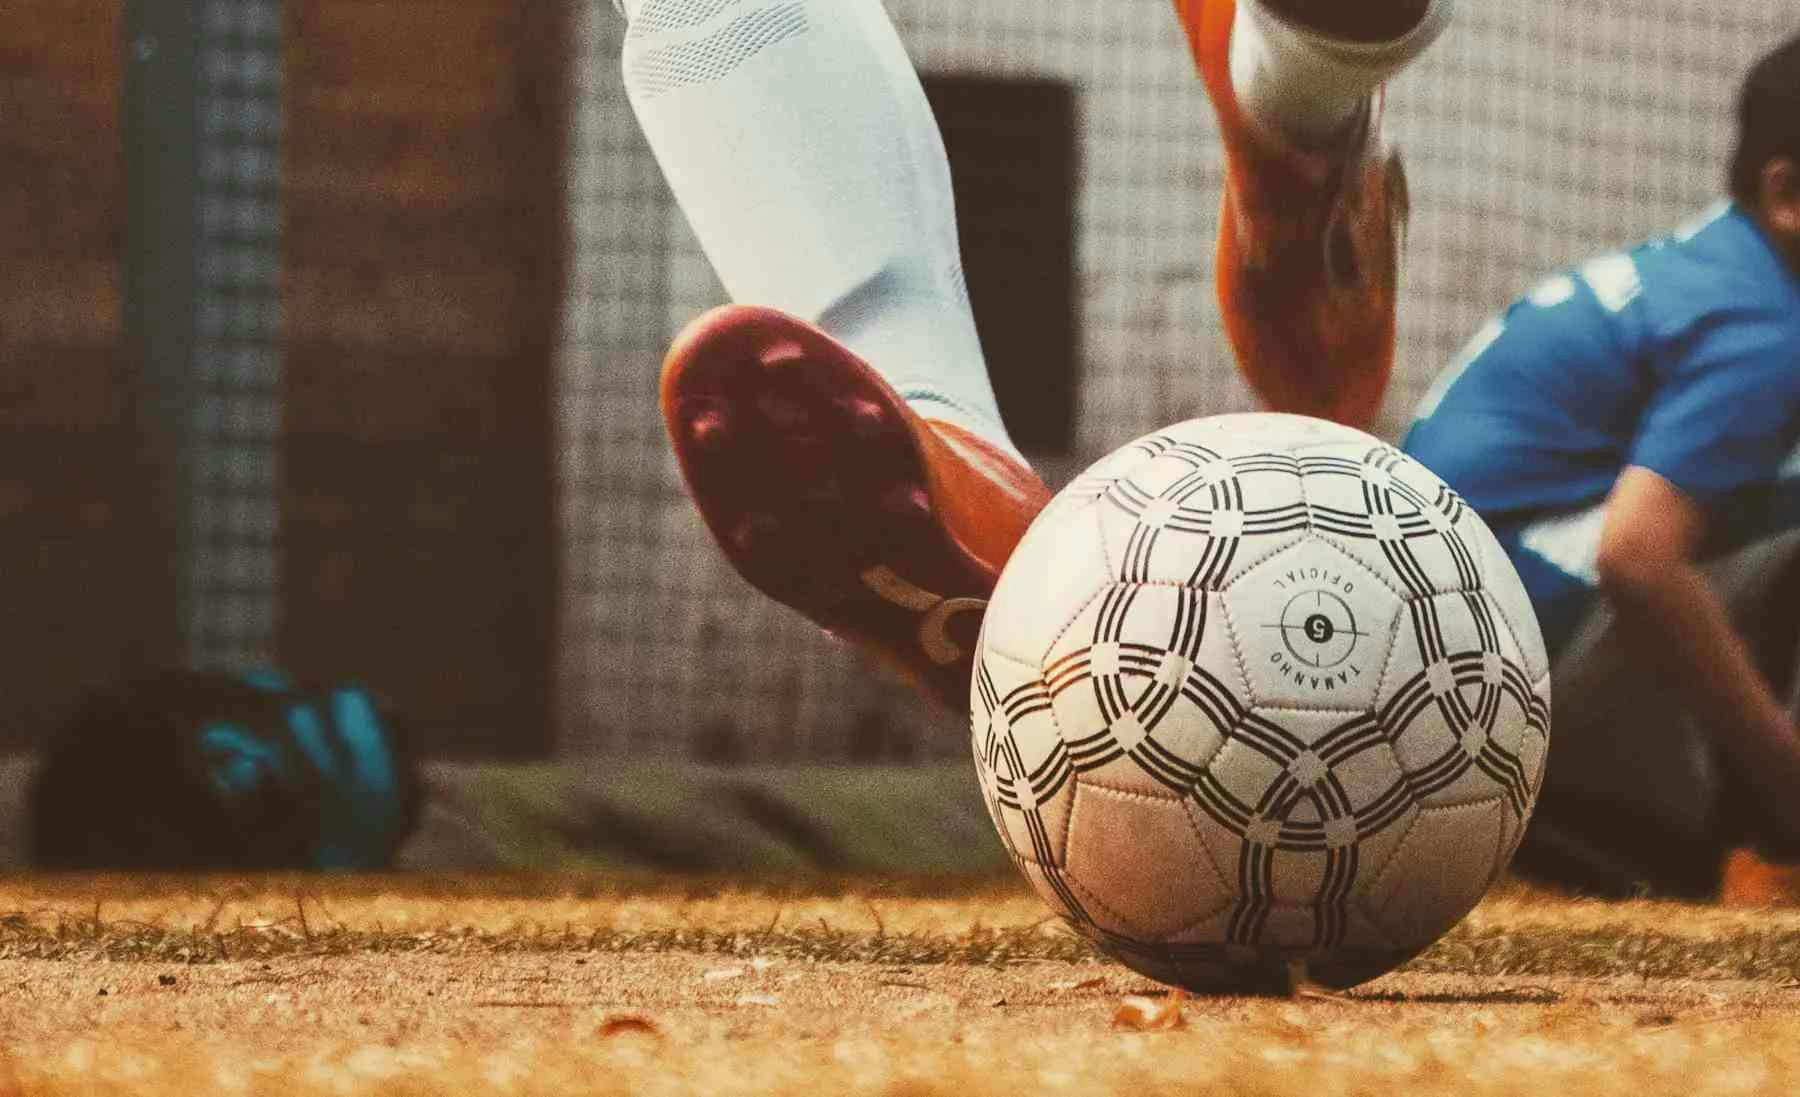 Imagem de uma bola de futebol em um campo, vemos também o pé de um atleta fazendo o chute. Ele usa chuteiras vermelhas